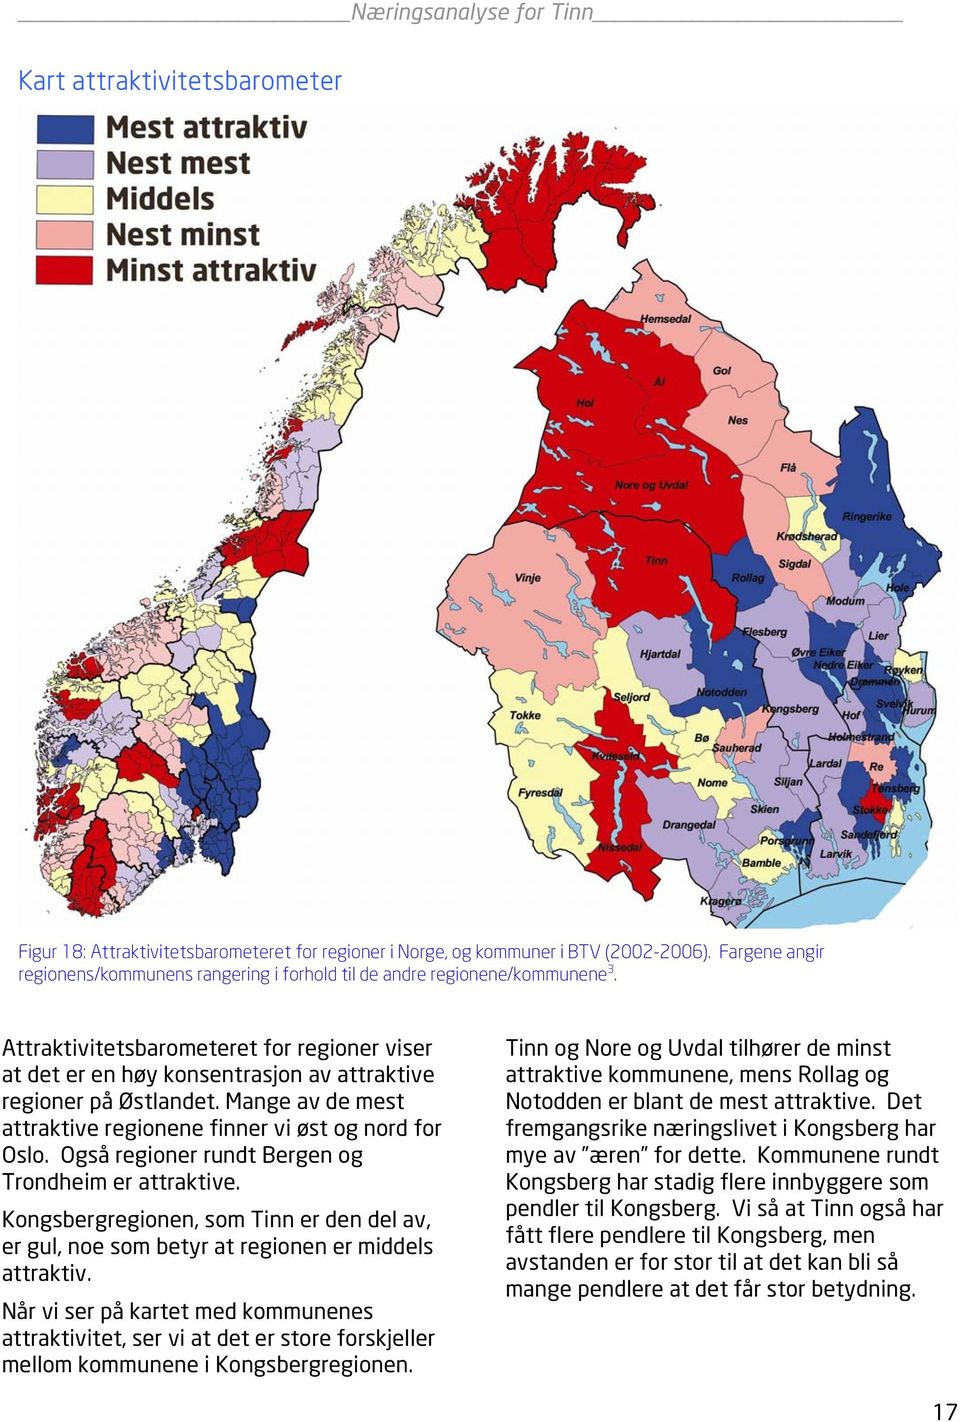 Attraktivitetsbarometeret for regioner viser at det er en høy konsentrasjon av attraktive regioner på Østlandet. Mange av de mest attraktive regionene finner vi øst og nord for Oslo.